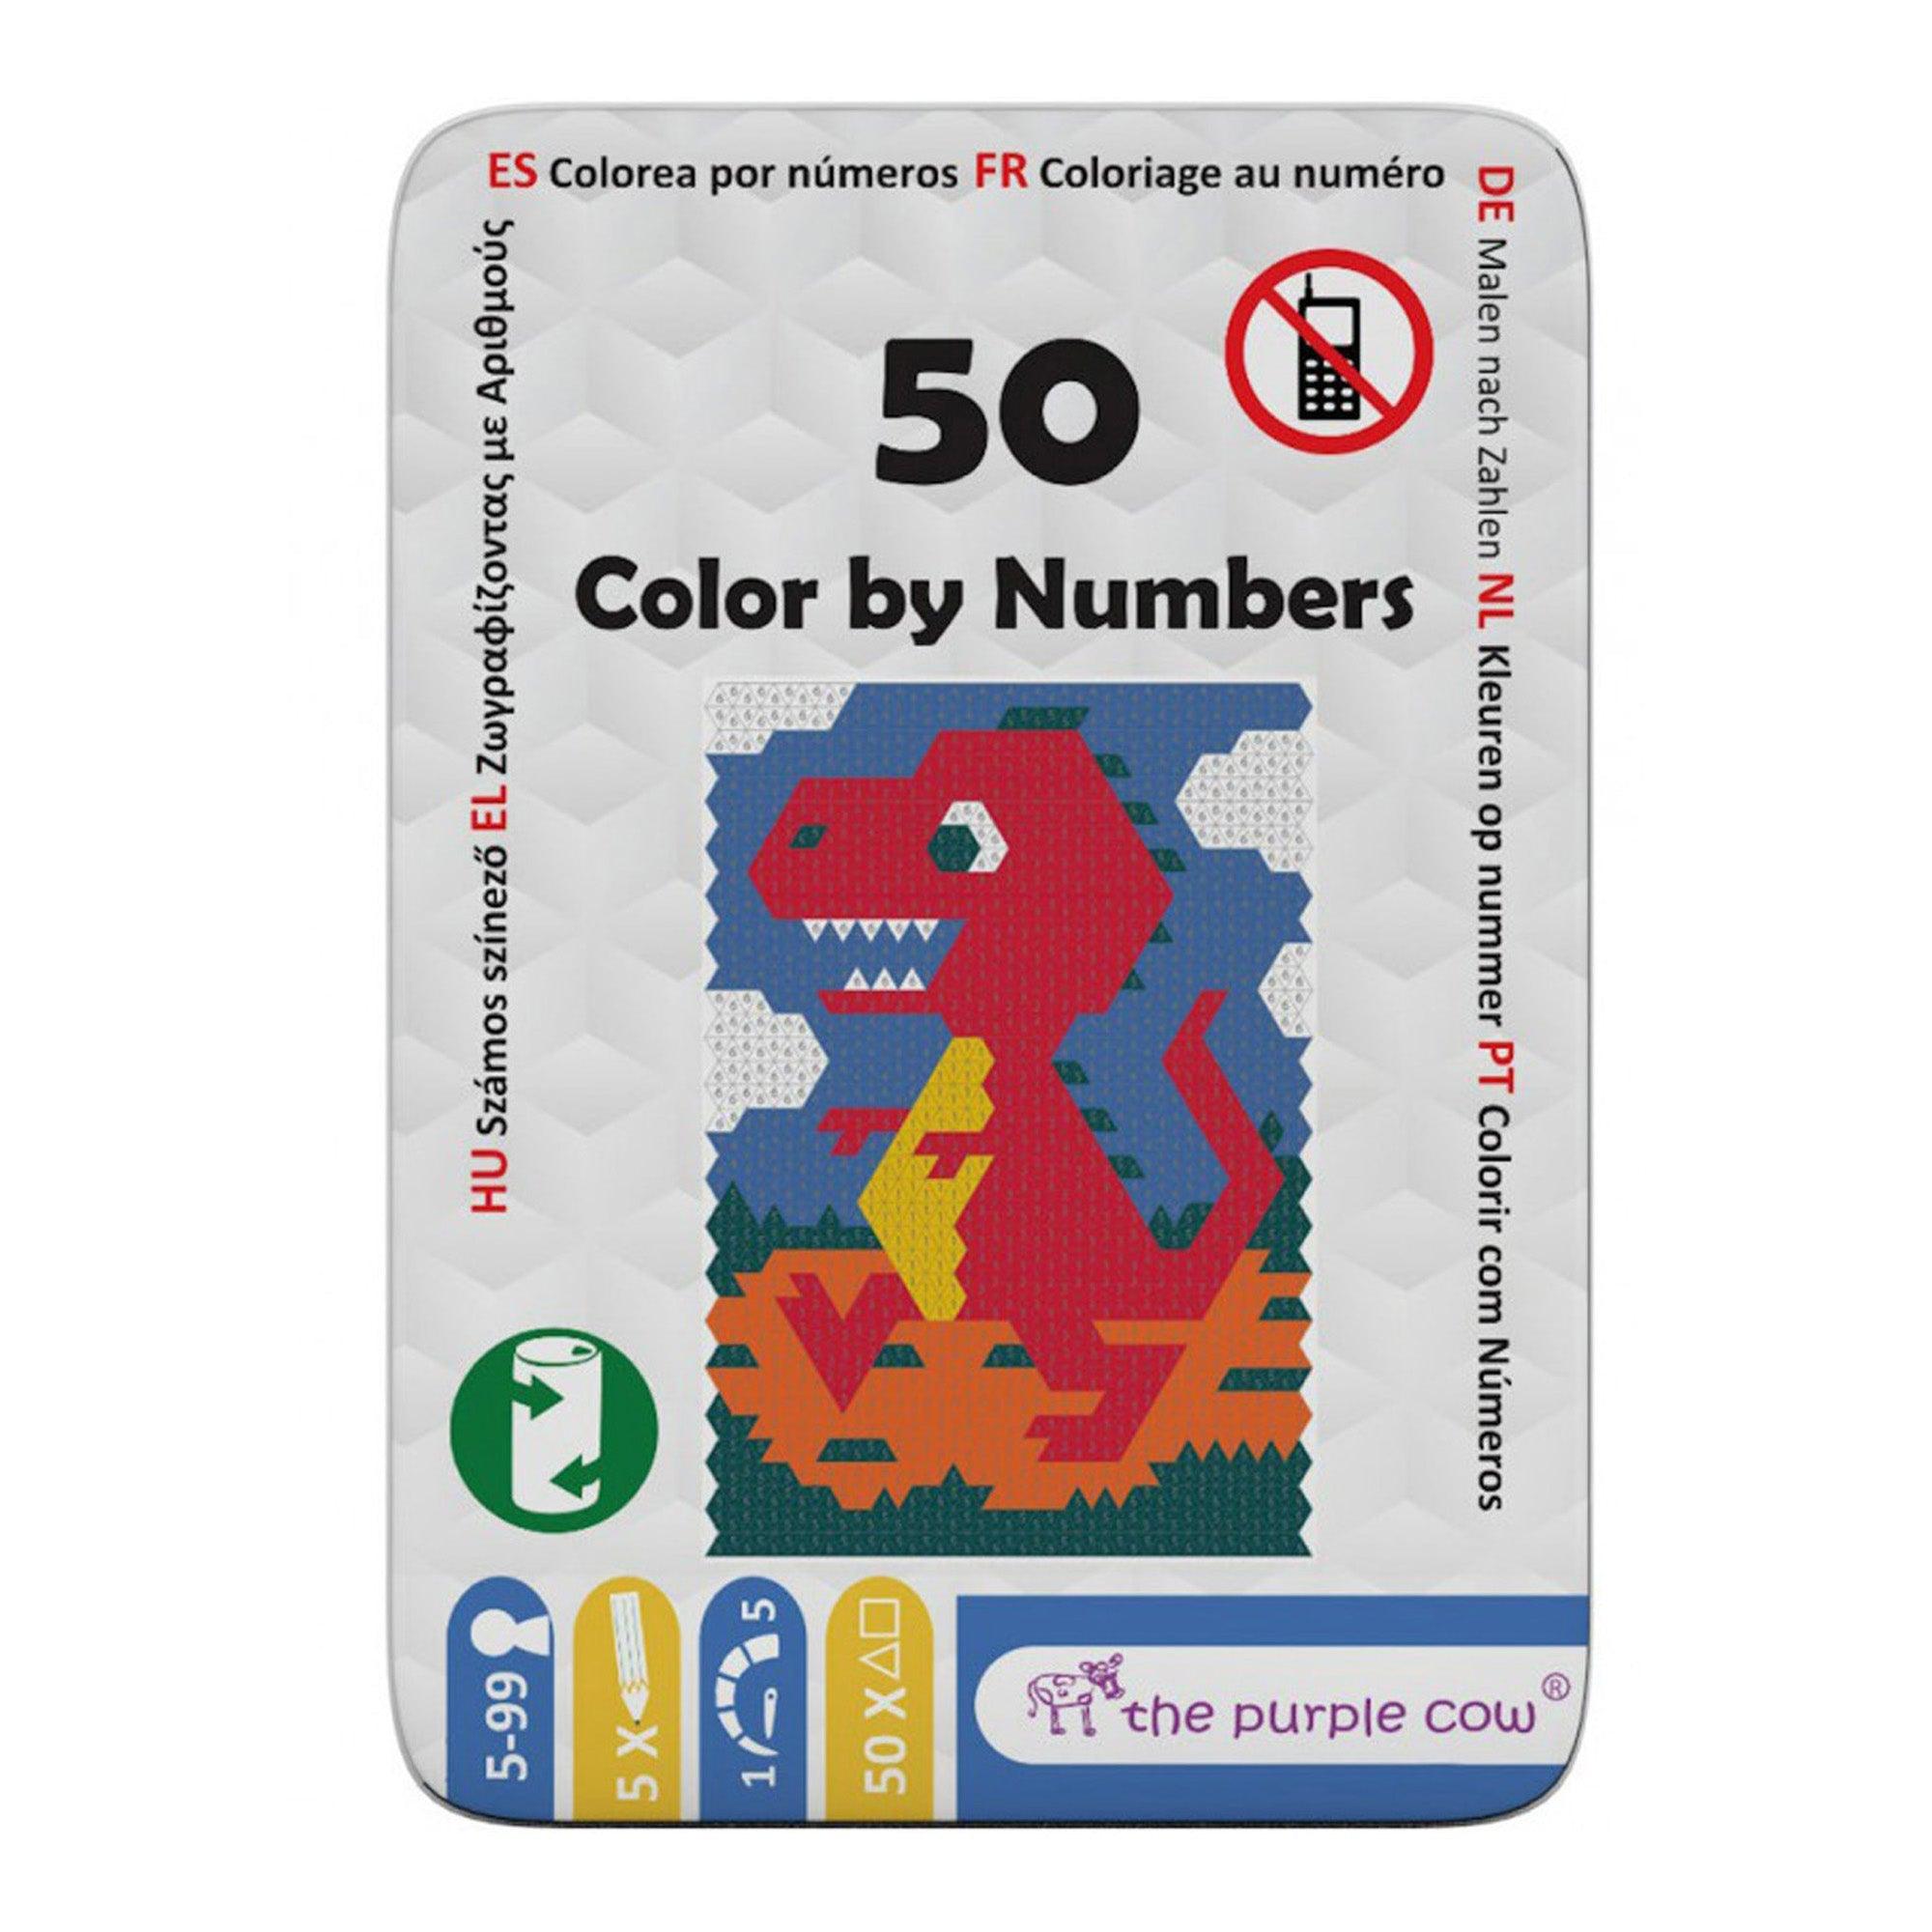 The Purple Cow: Travel Coloring Book 50 Color por números